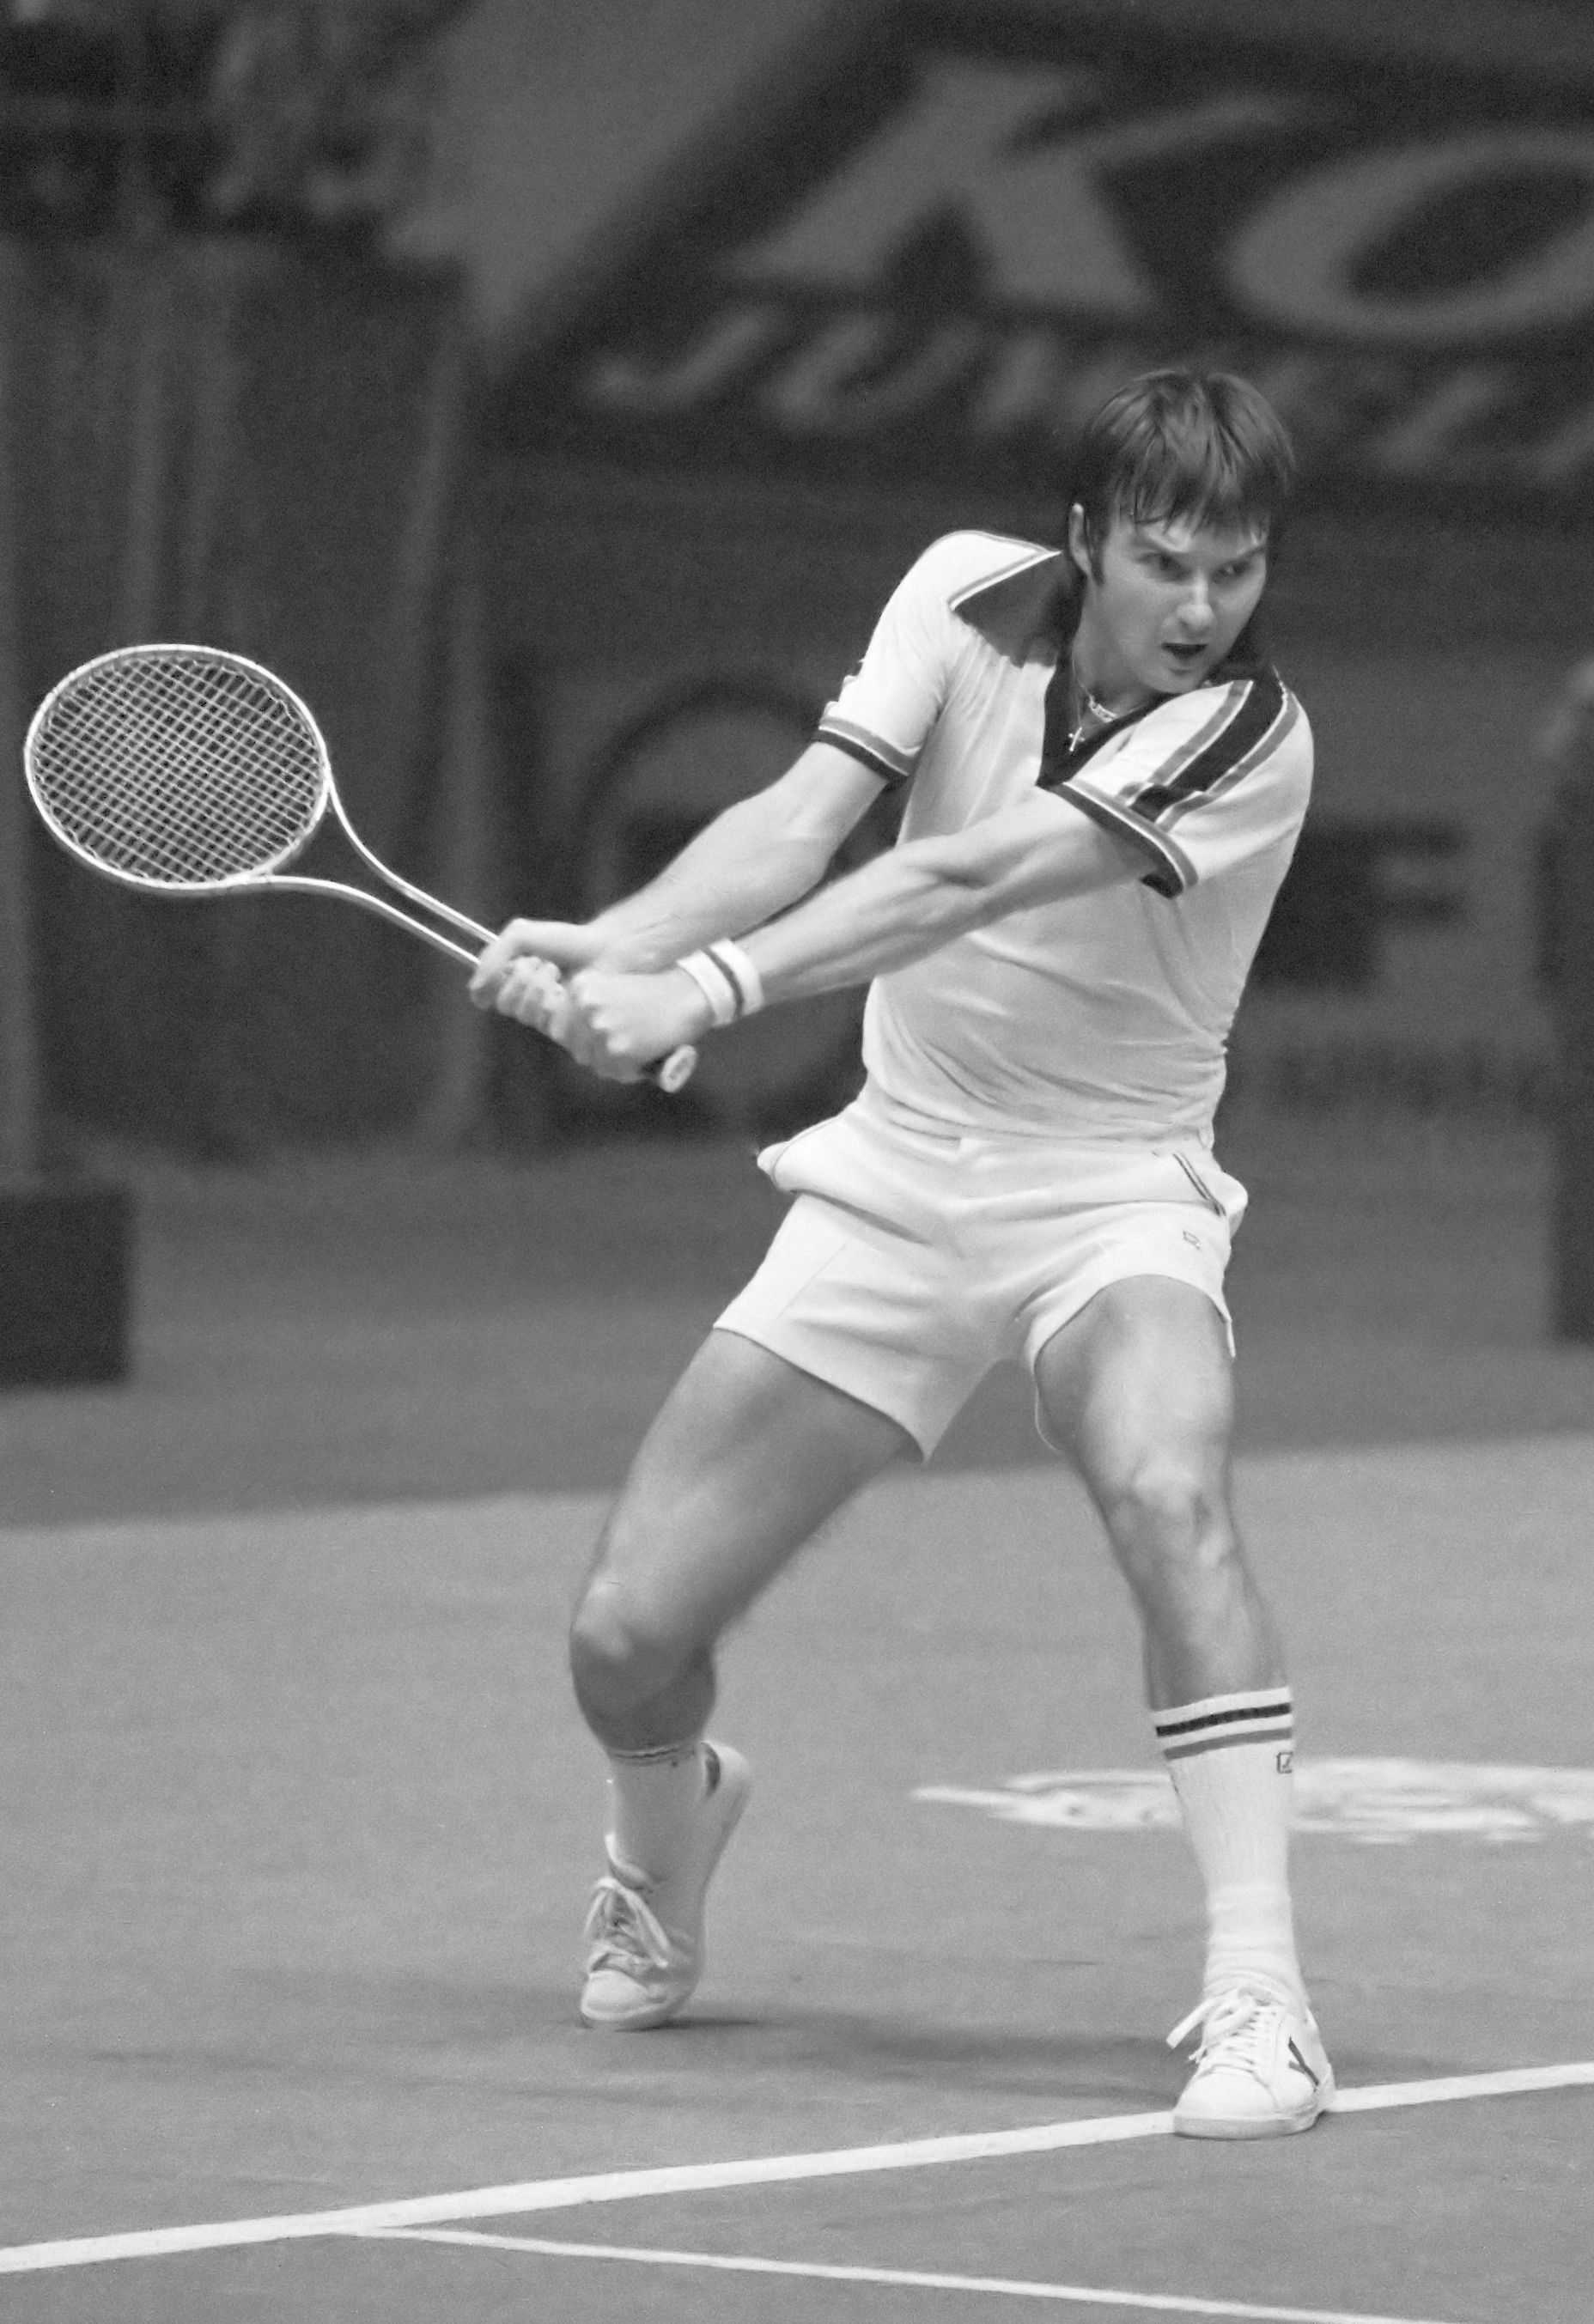 Джимми коннорс. легенда тенниса и тренер марии шараповой | uzbekistan tennis federation